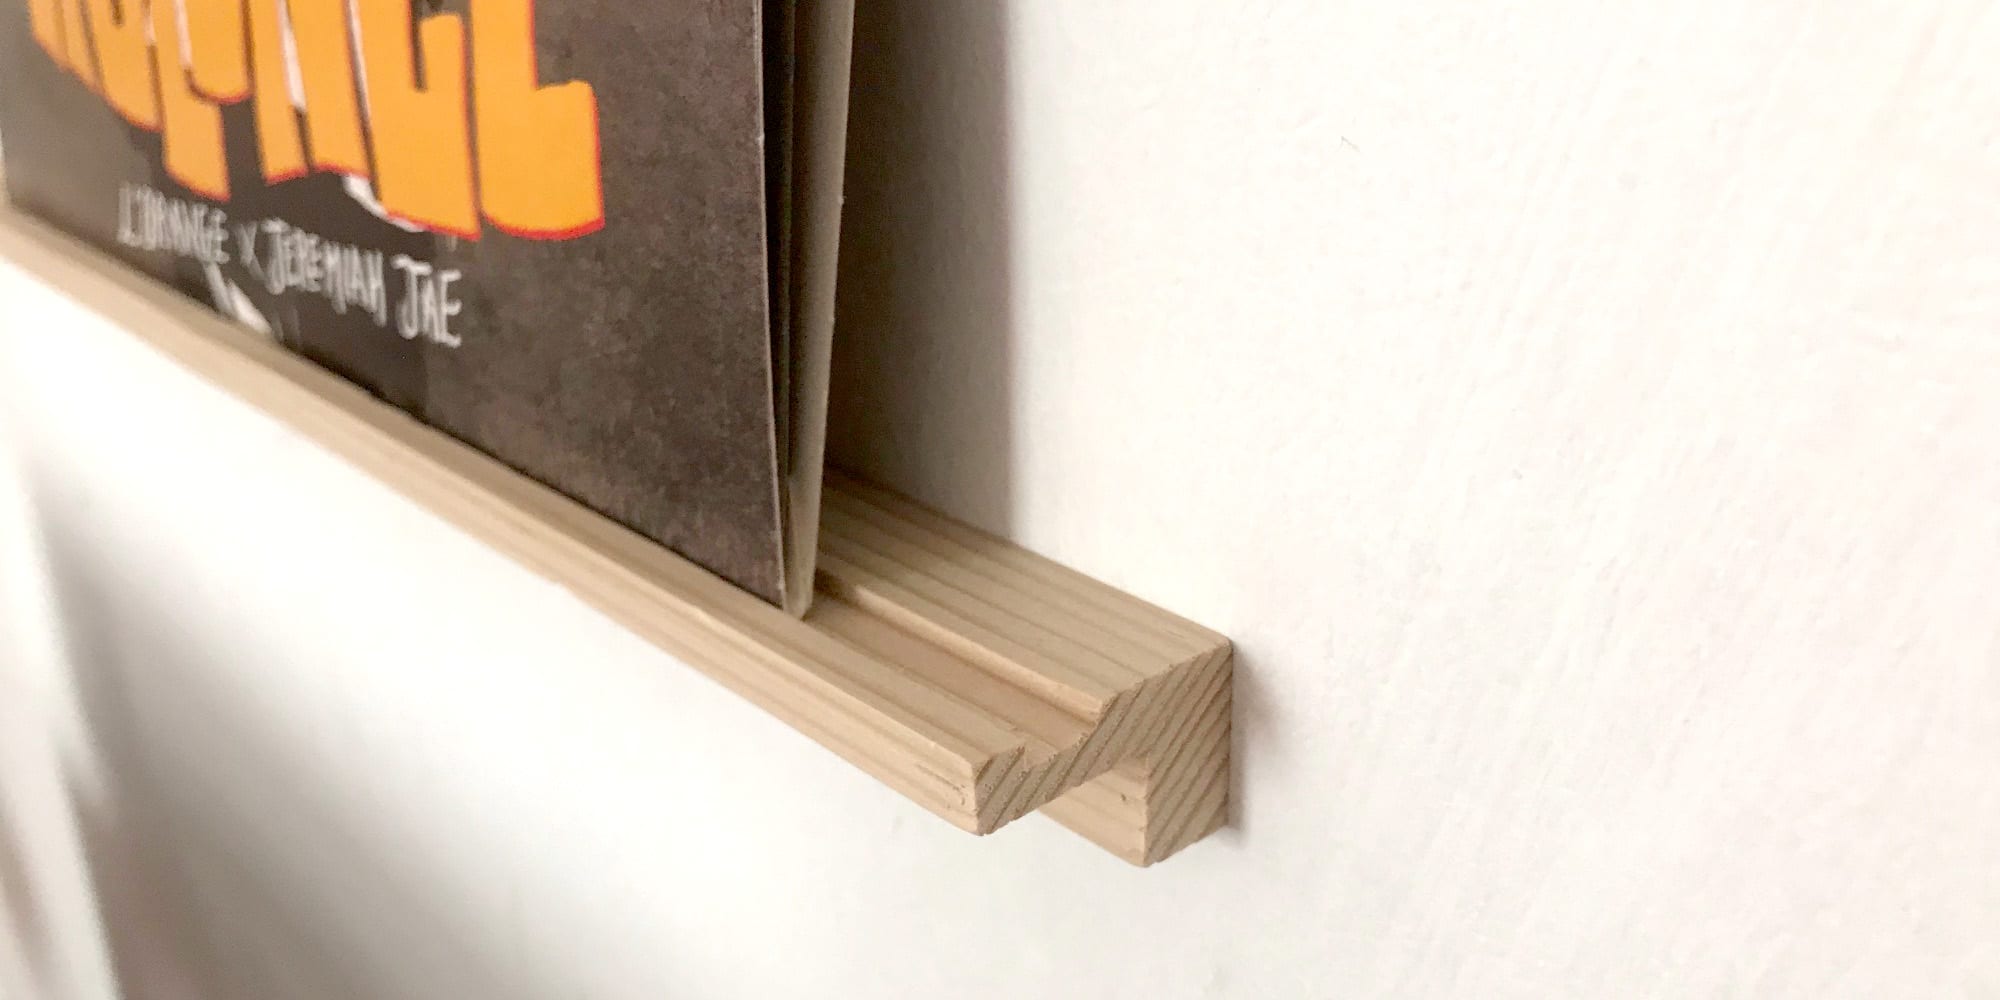 La Machinerie - NOUVEAUTÉ // LE CADRE VINYLE 33 TOURS EN BOIS 💽 Ce sublime cadre  pour #vinyle en bois se fond parfaitement avec la décoration de votre  intérieur sur votre mur